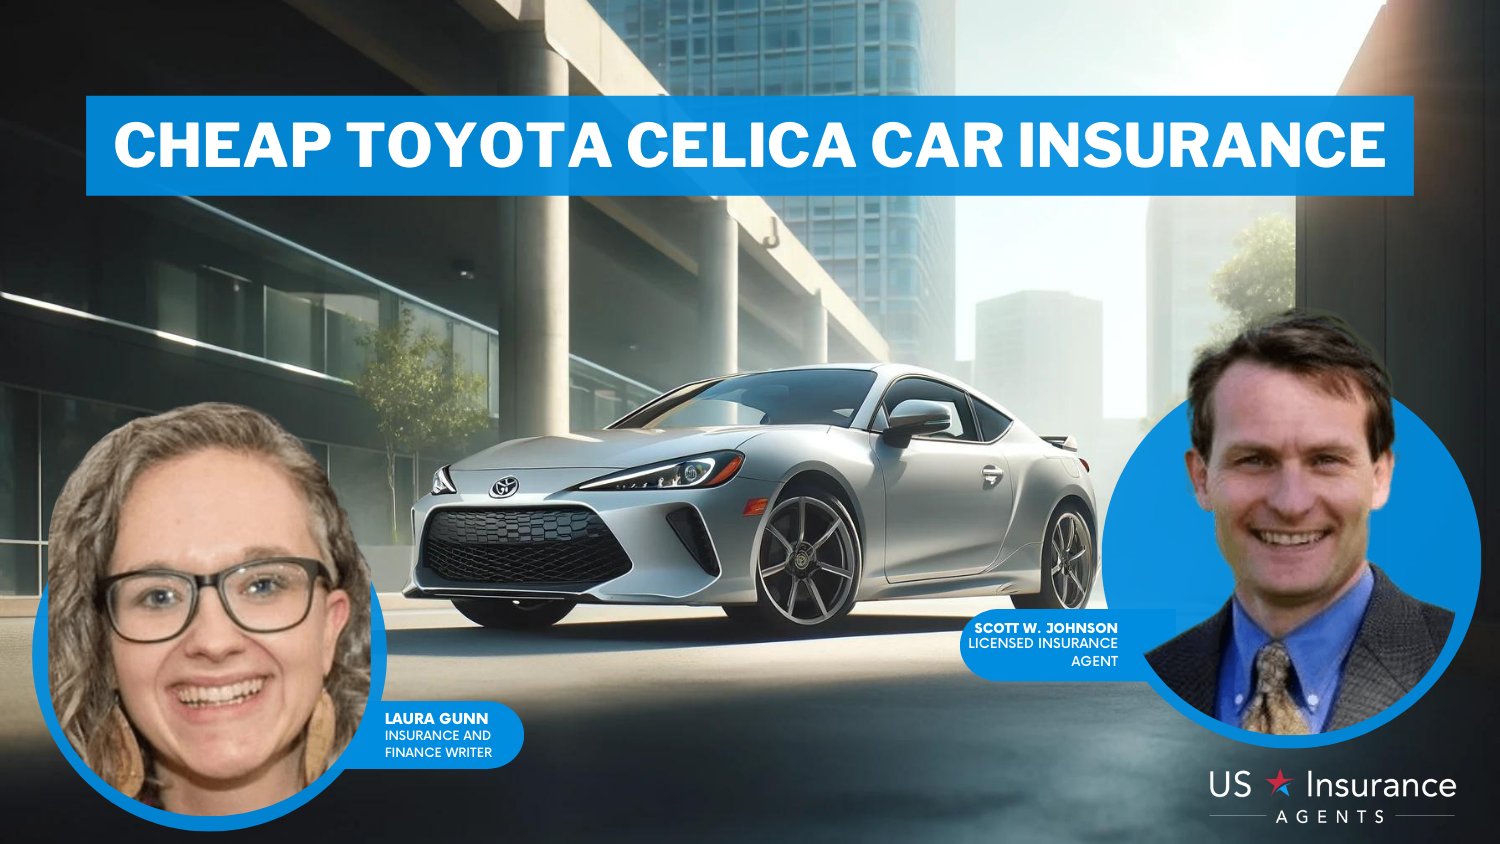 Cheap Toyota Celica Car Insurance: State Farm, Progressive, and Farmers